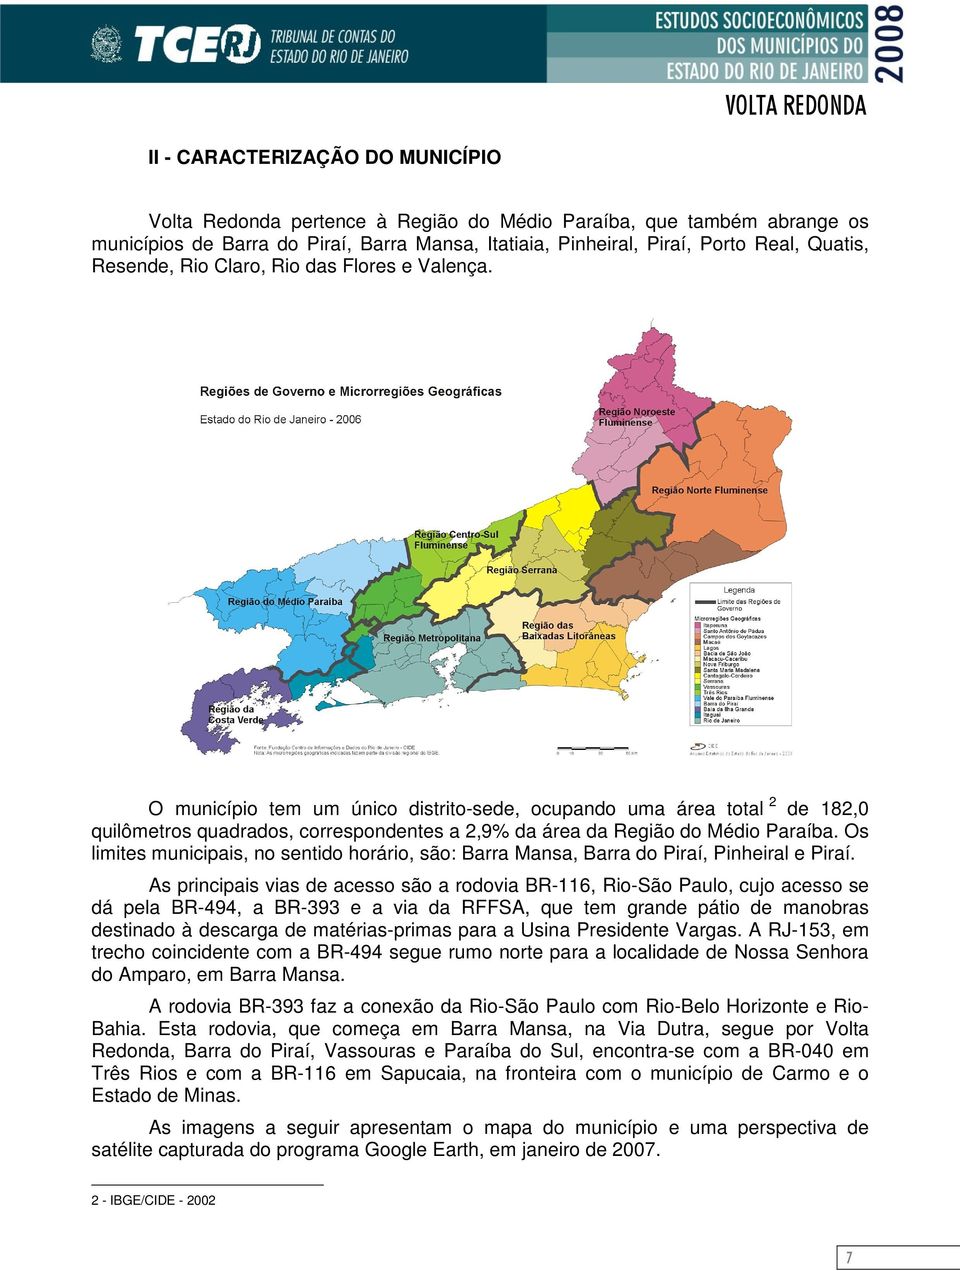 O município tem um único distrito-sede, ocupando uma área total 2 de 182,0 quilômetros quadrados, correspondentes a 2,9% da área da Região do Médio Paraíba.